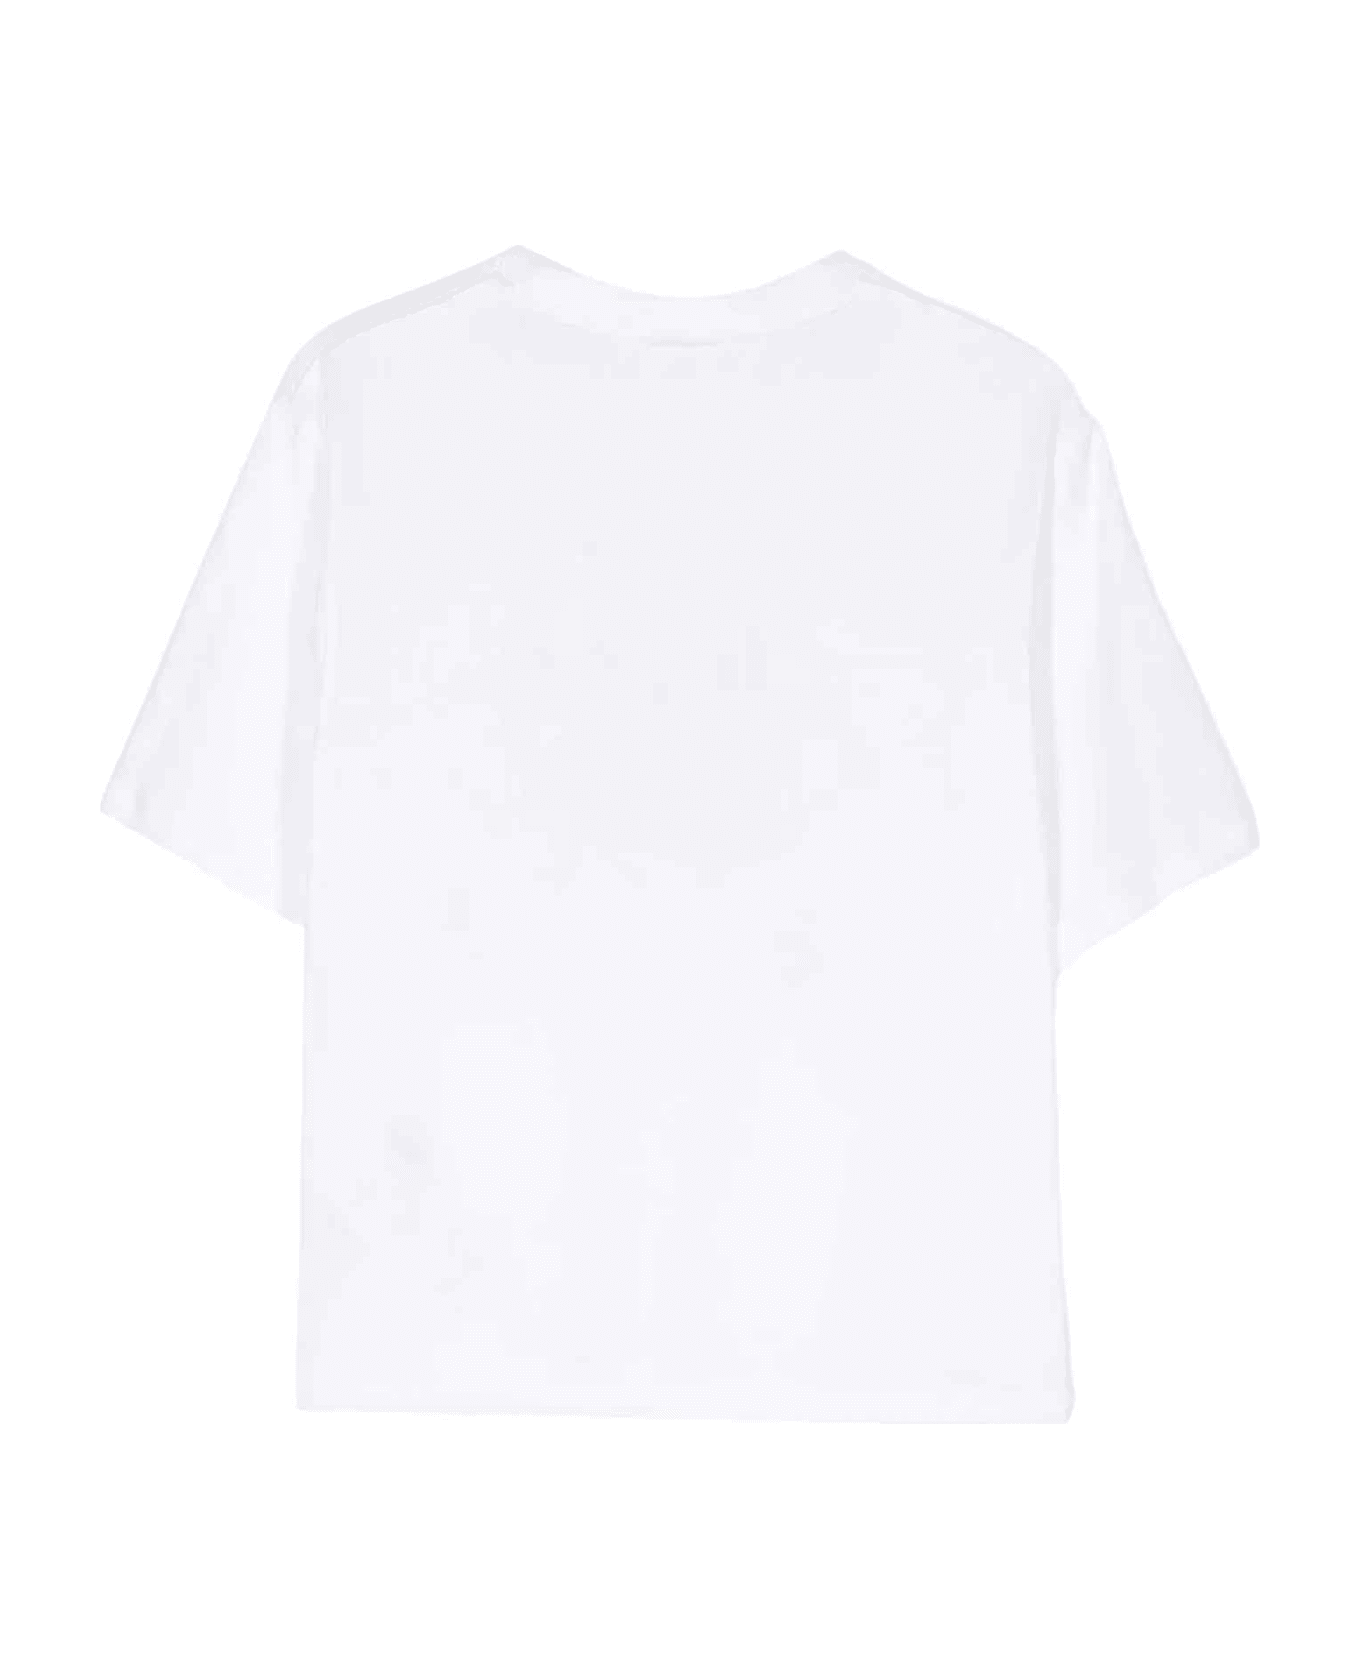 GCDS ajustados White T-shirt Unisex - Bianco Ottico